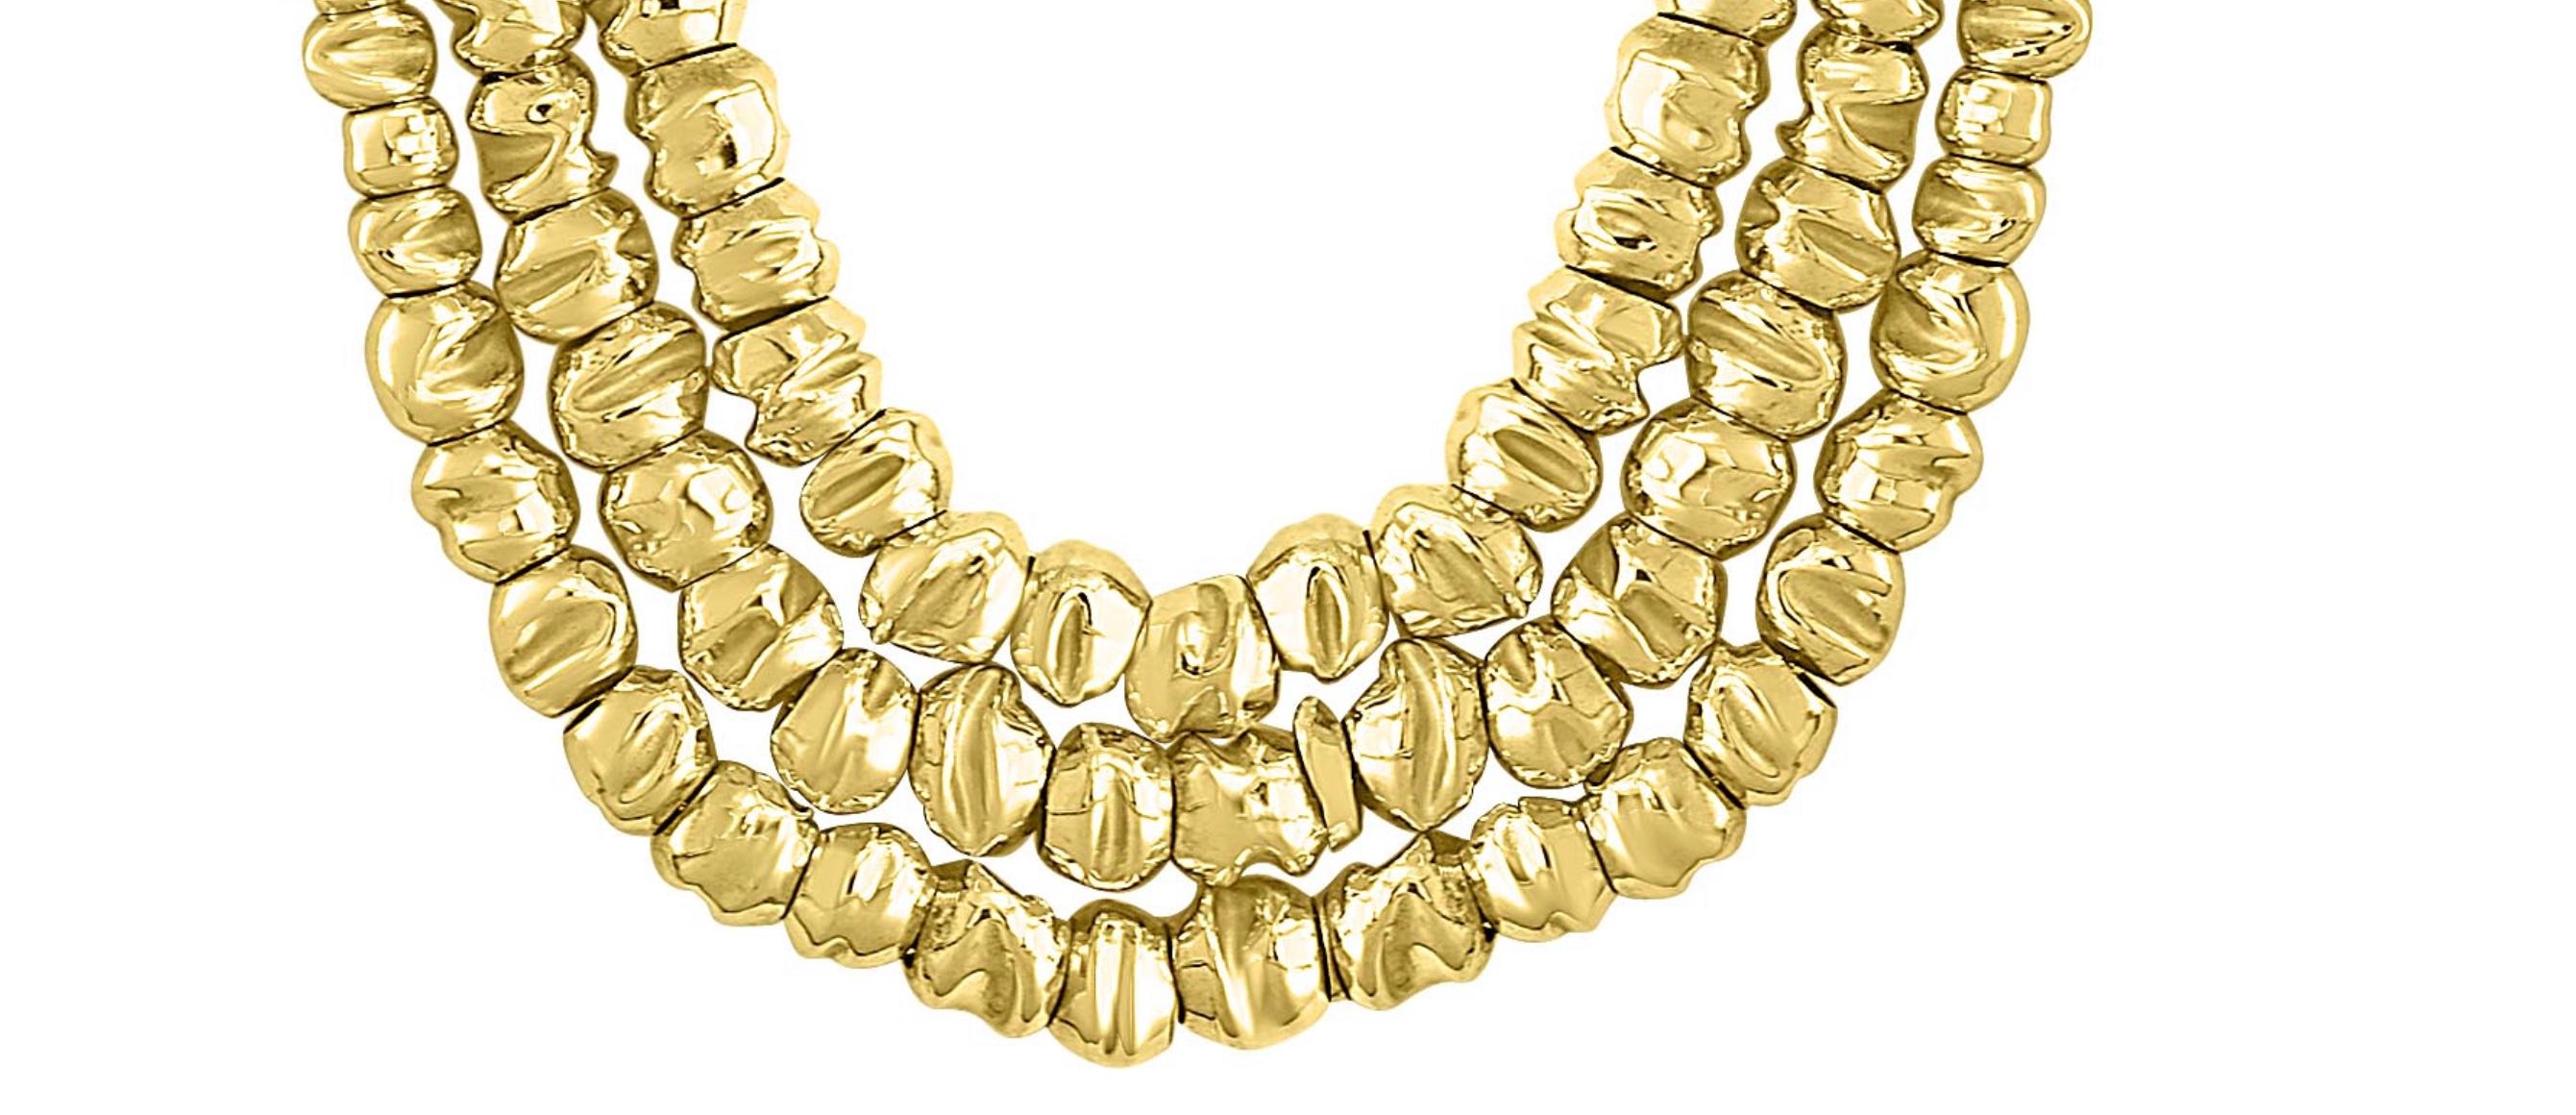 132 Gm 18 Karat  Gelb  Gold-Designer  Orlando-Orlandini Halskette 18-22 Zoll
Eines unserer Premium-Neckalce  aus unserer Brautmodenkollektion.
Drei Schichten Gold Halskette 
einstellbar auf 18-22 Zoll
Das Gewicht der Halskette beträgt 132 Gramm.